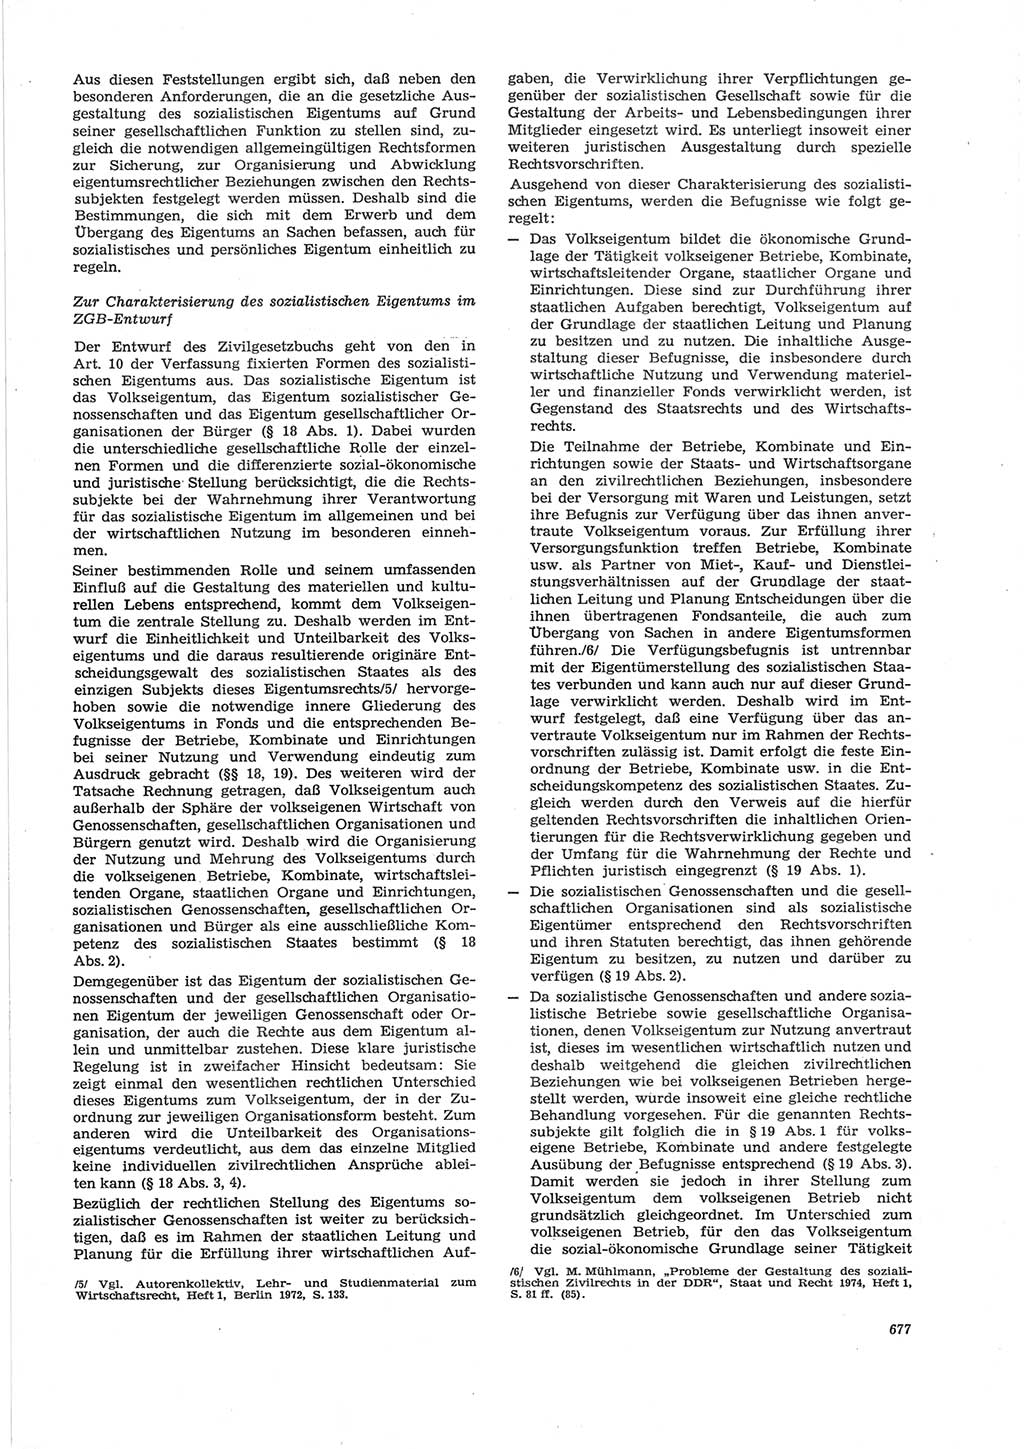 Neue Justiz (NJ), Zeitschrift für Recht und Rechtswissenschaft [Deutsche Demokratische Republik (DDR)], 28. Jahrgang 1974, Seite 677 (NJ DDR 1974, S. 677)